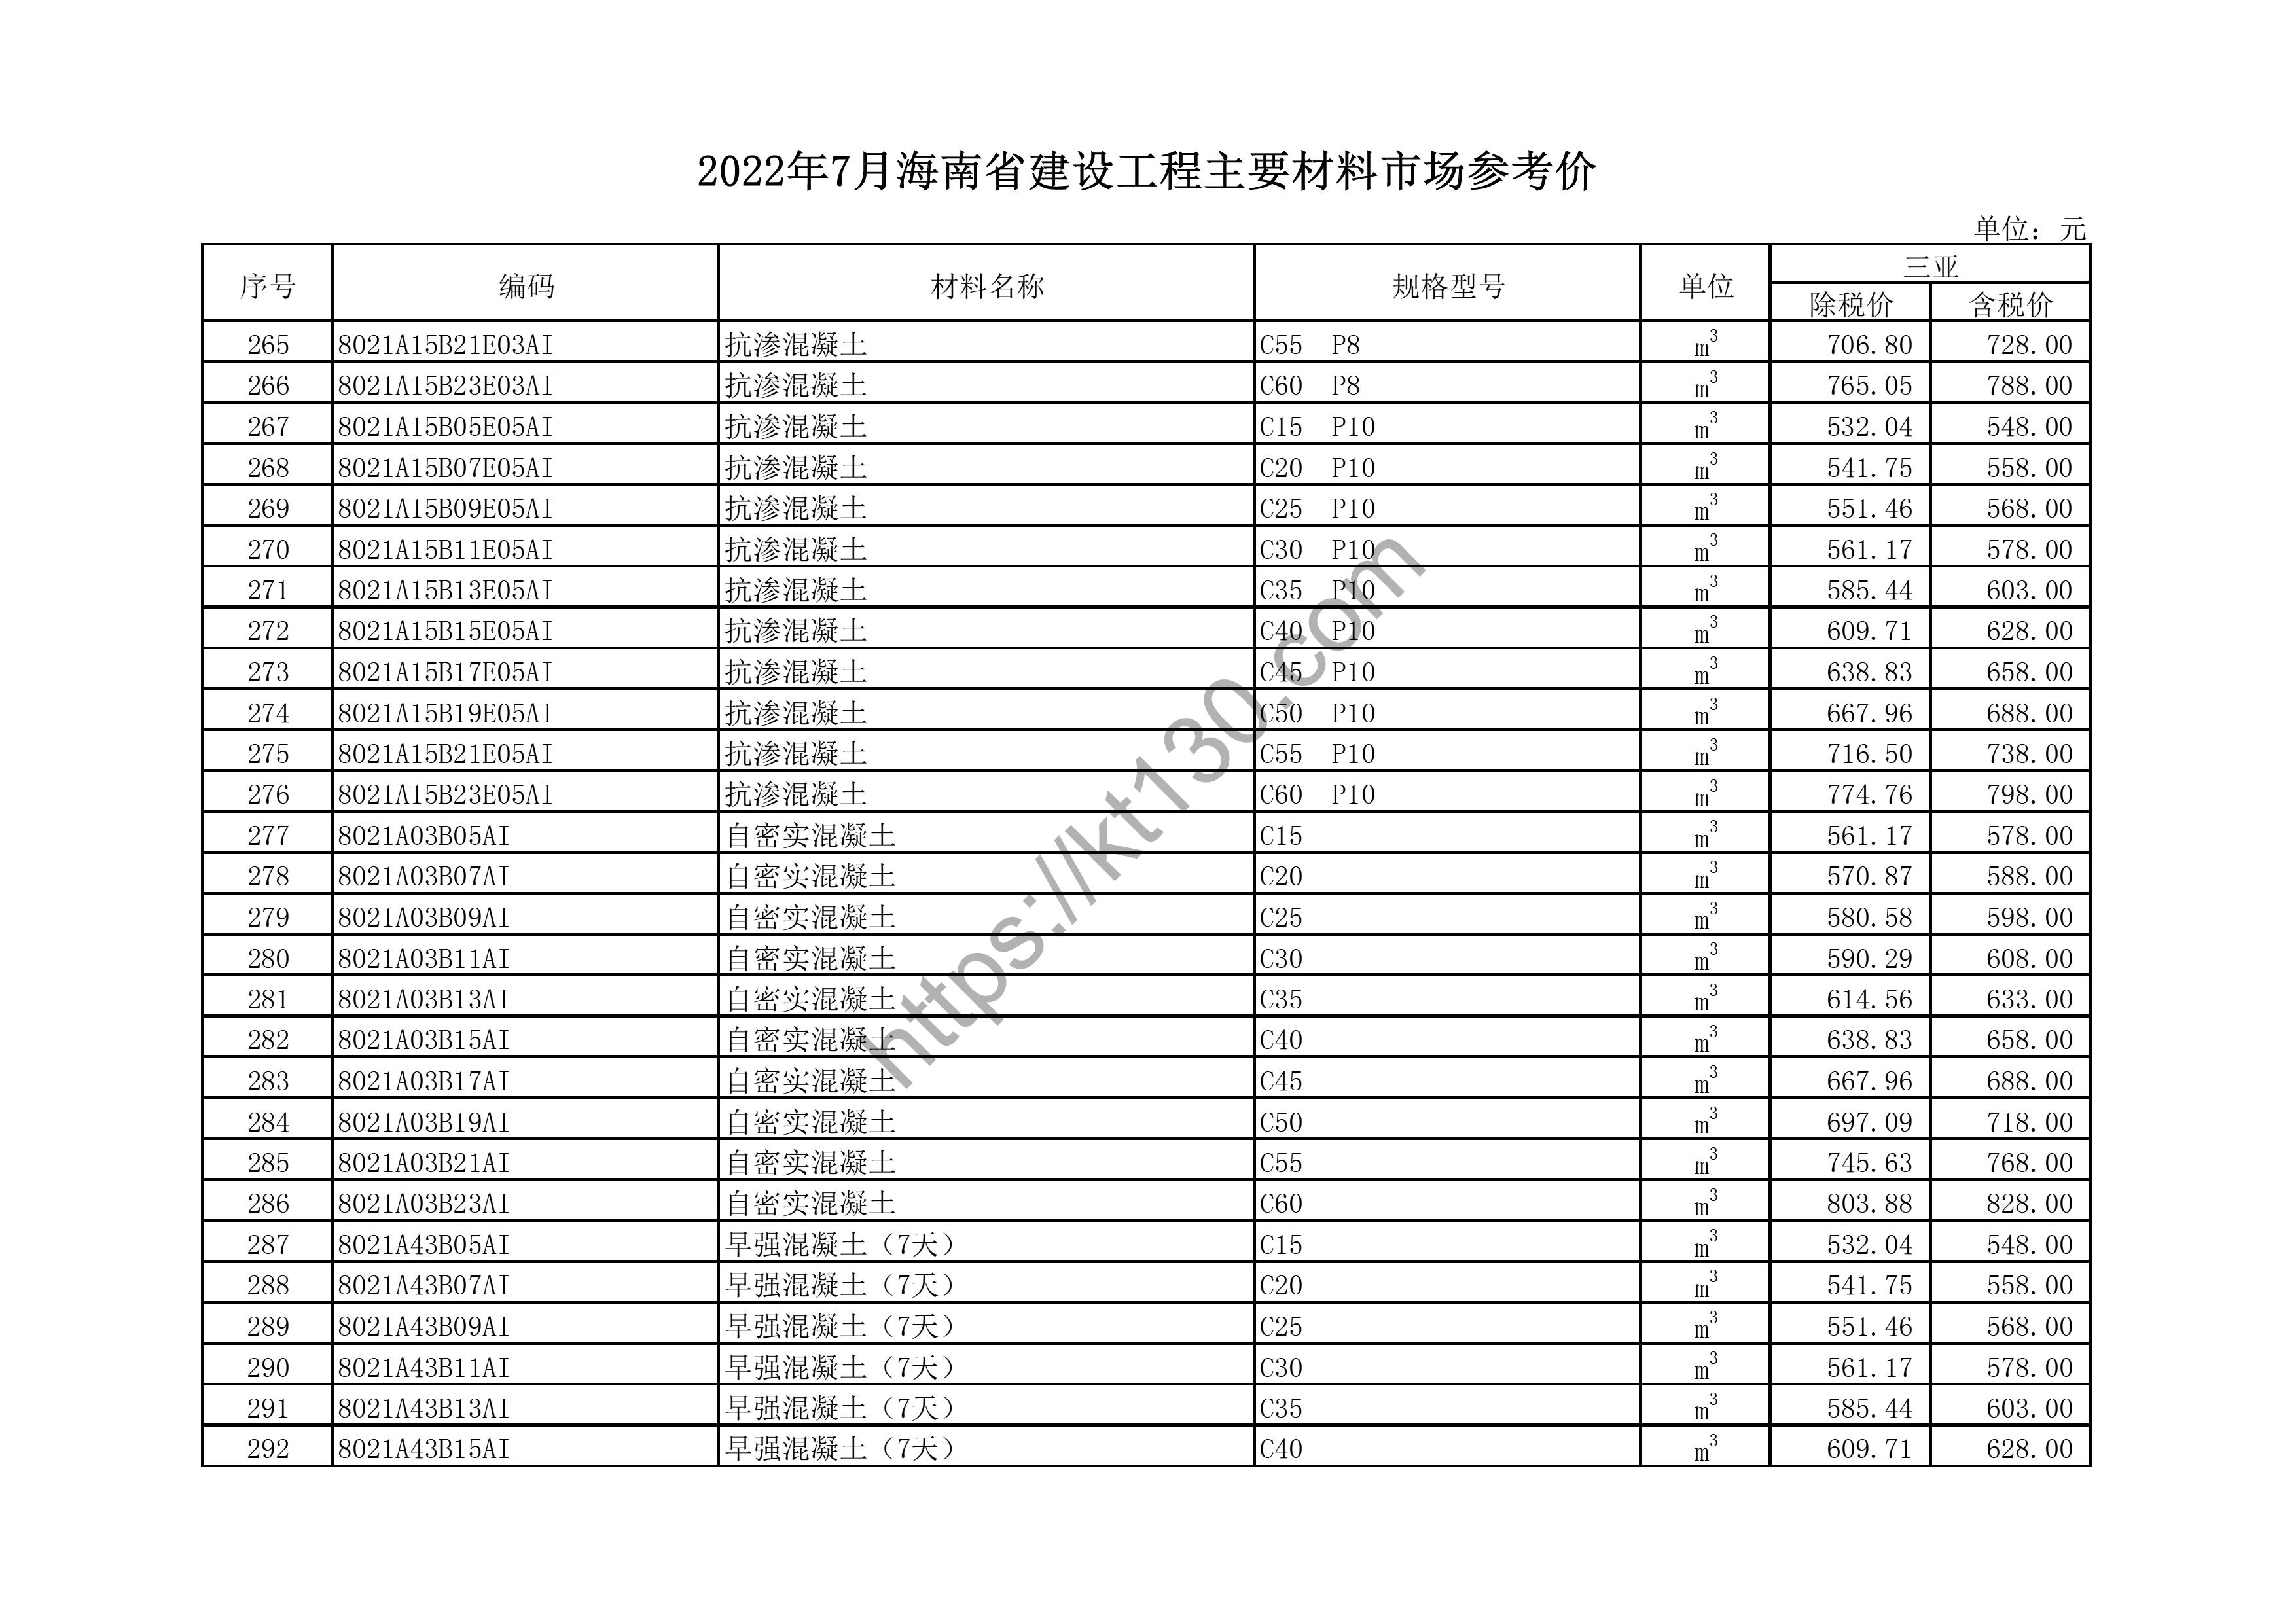 海南省2022年7月建筑材料价_PHC管桩_44759